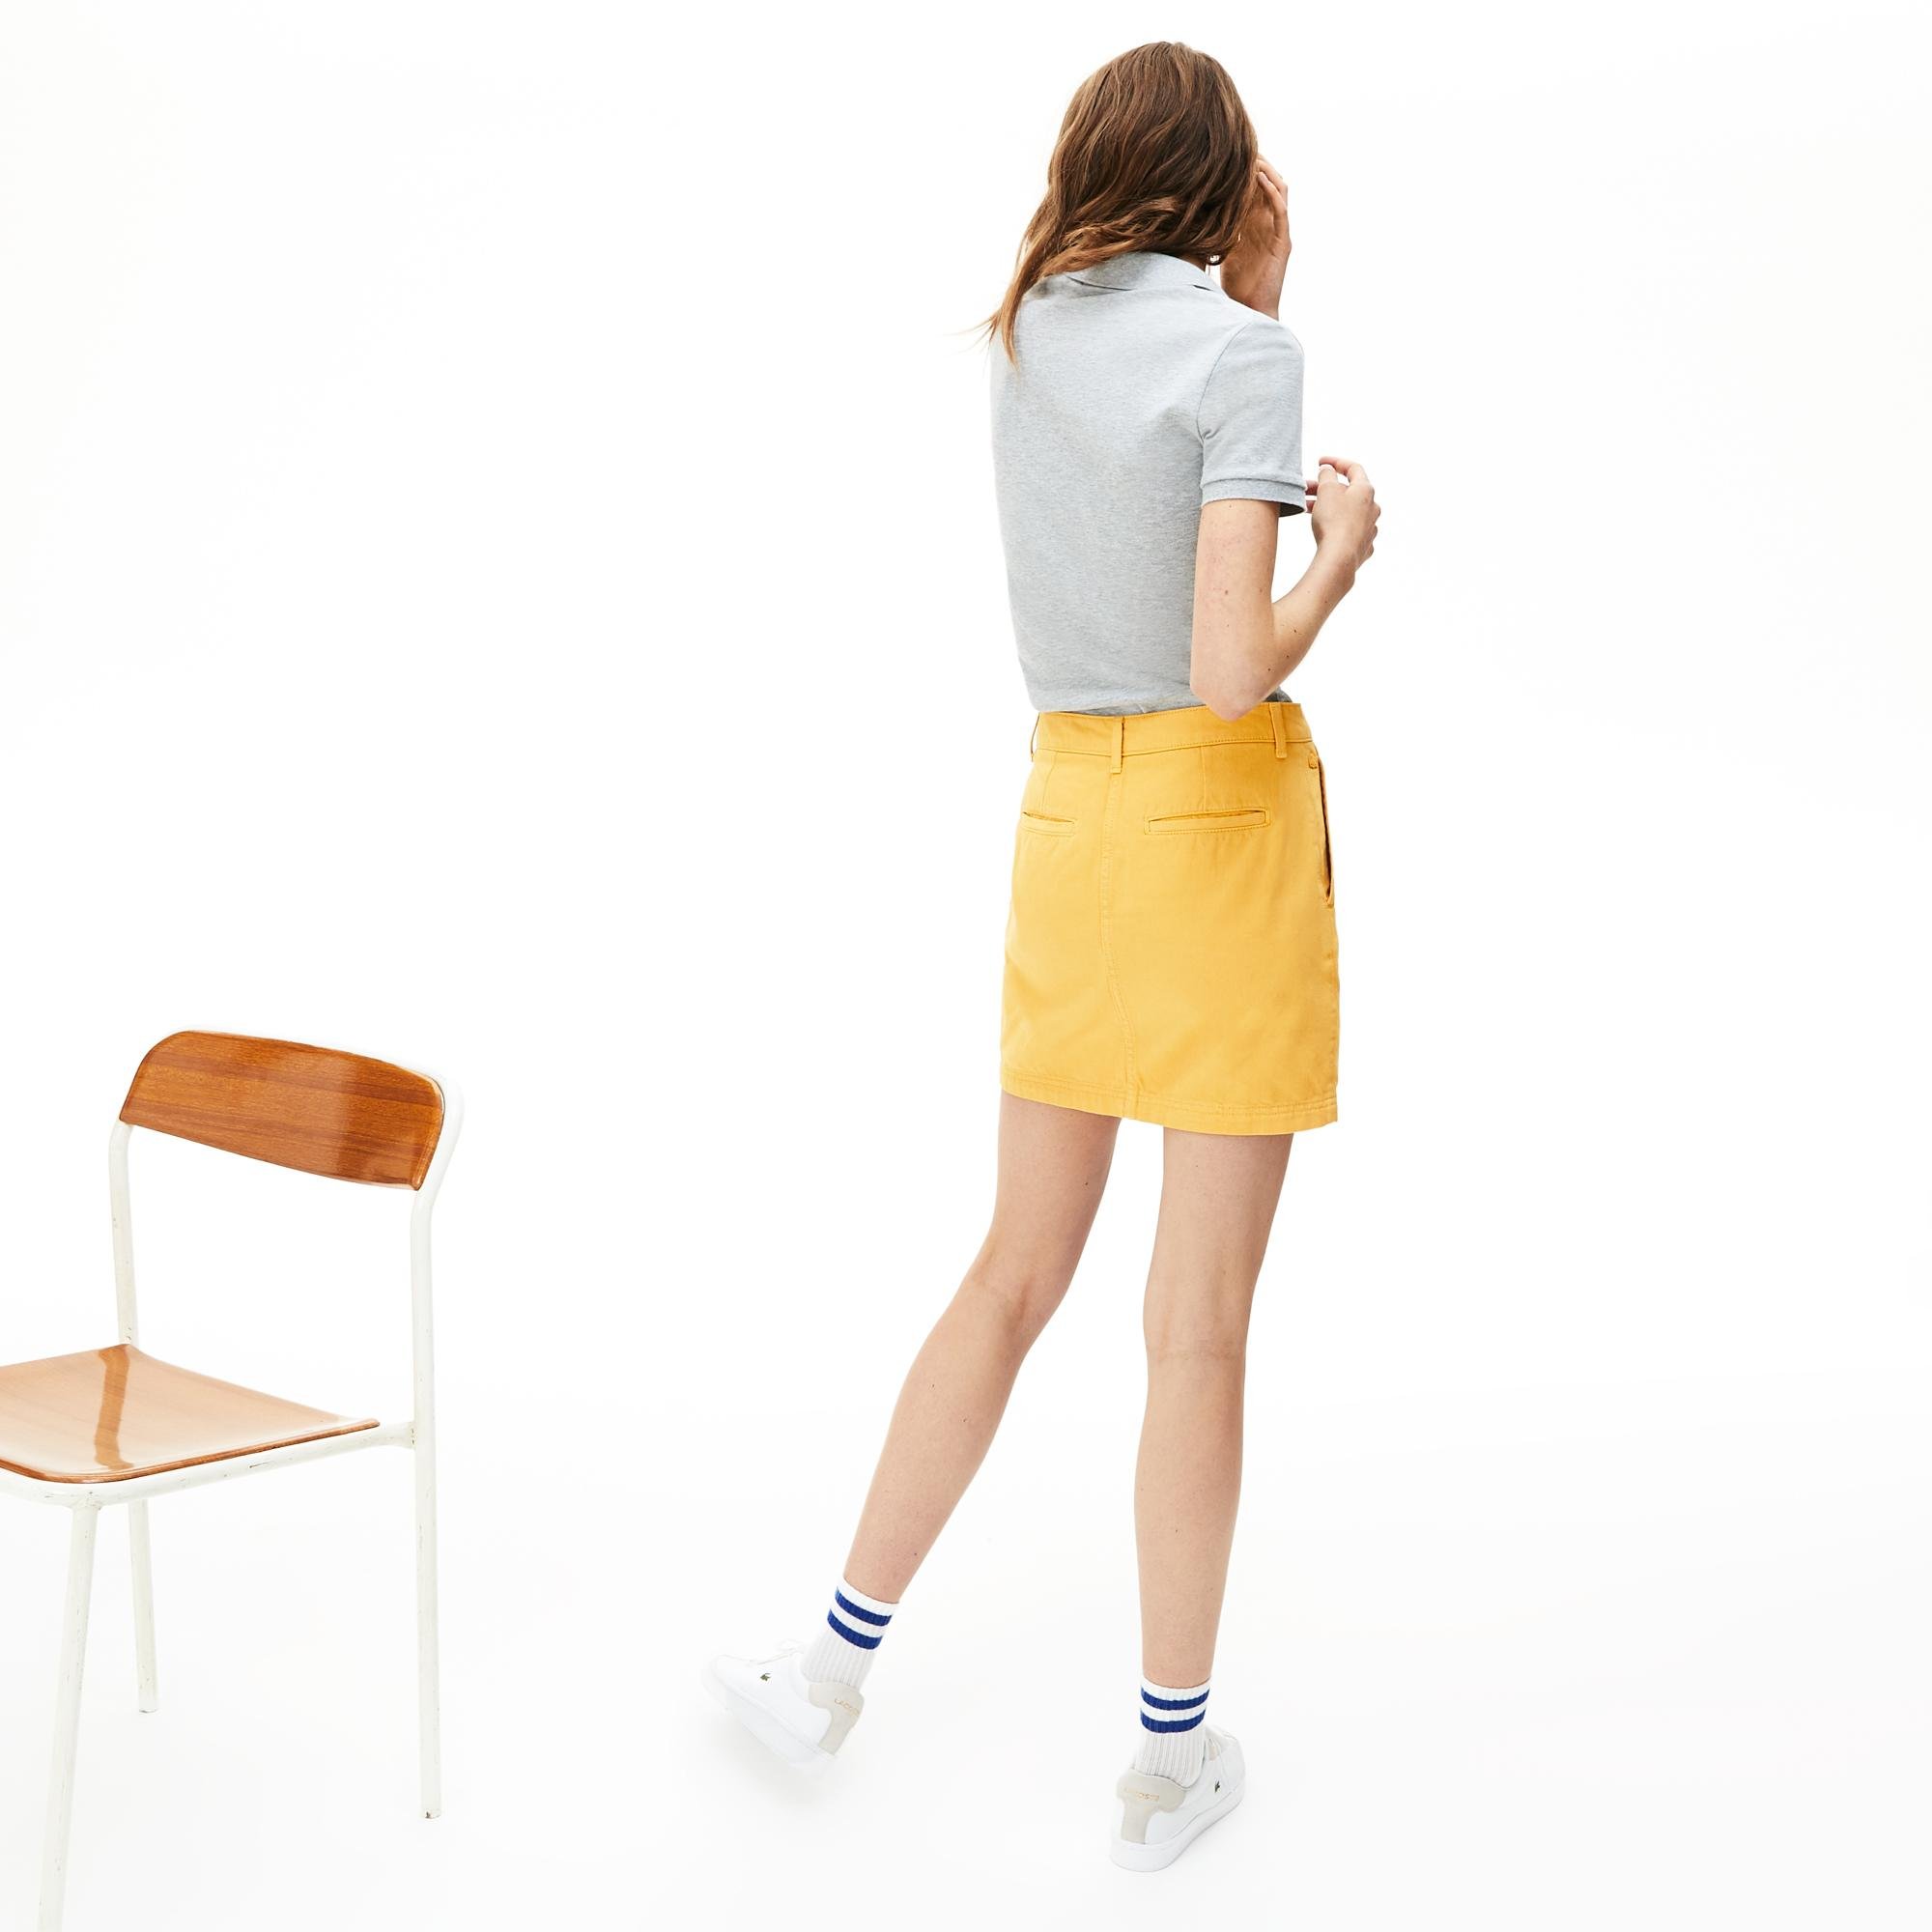 Lacoste Women's Slim Fit Stretch Mini Cotton Piqué Polo